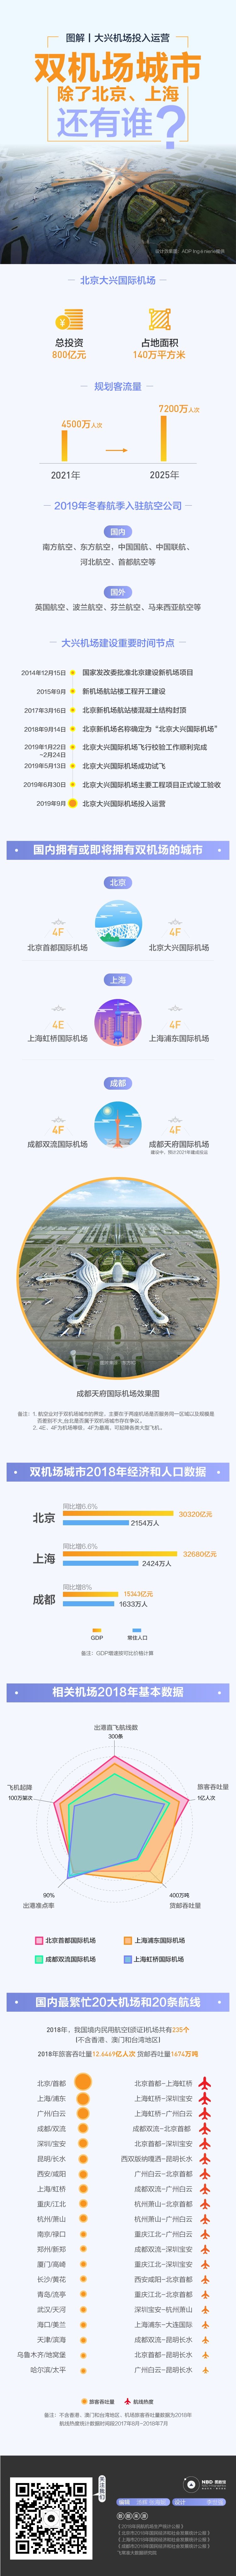 大兴机场投运，双机场城市除北京、上海还有谁？-上海空运公司